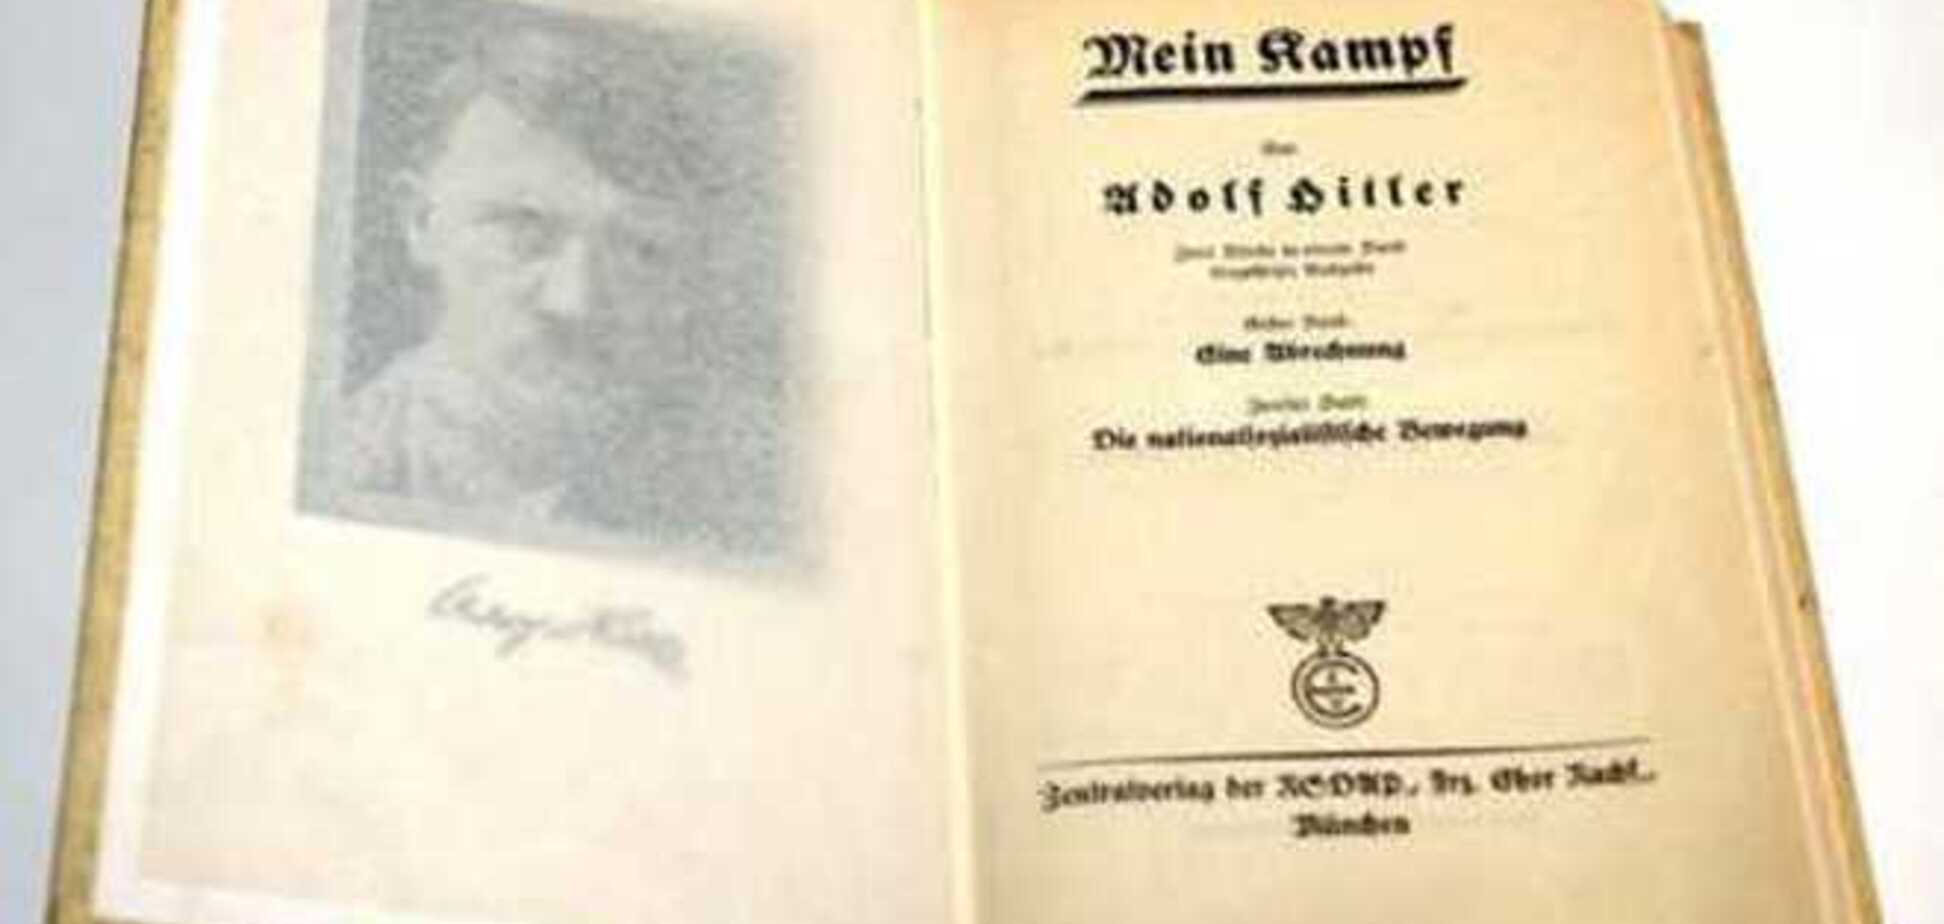 В Германии не будут распространять книгу Гитлера после 2015 года